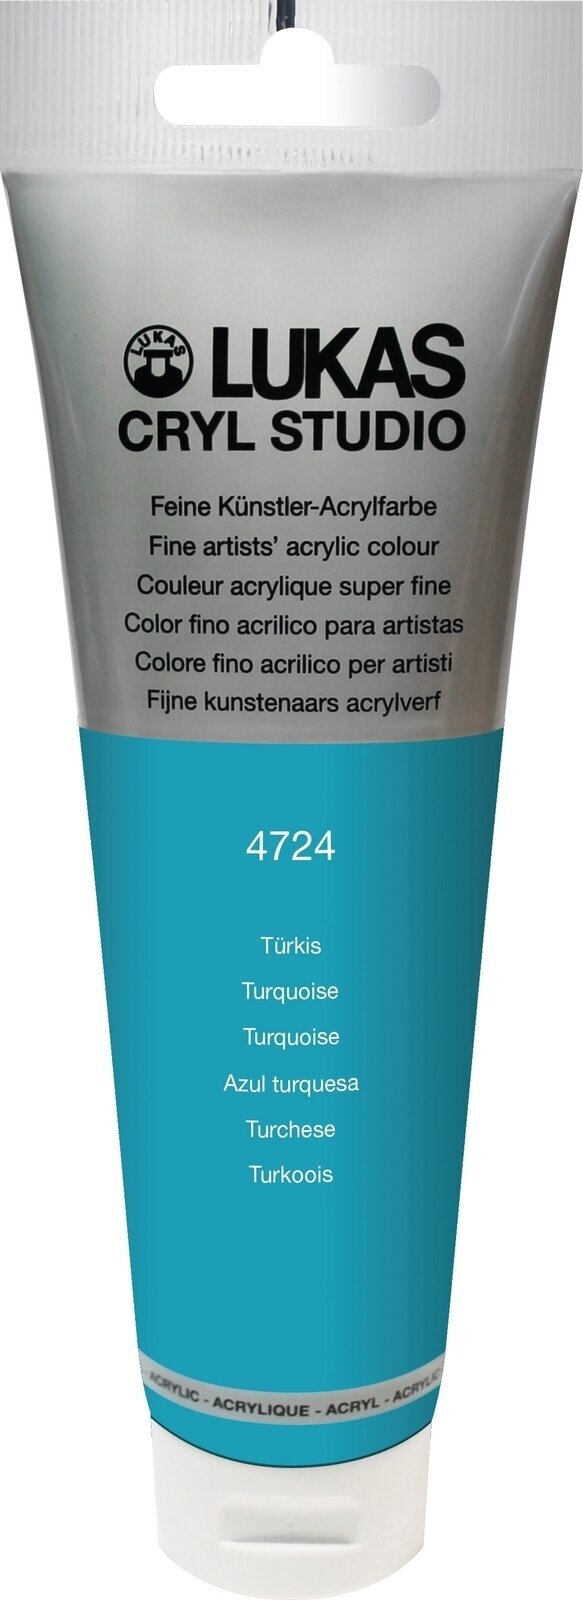 Tinta acrílica Lukas Cryl Studio Acrylic Paint Plastic Tube Tinta acrílica Turquoise 125 ml 1 un.